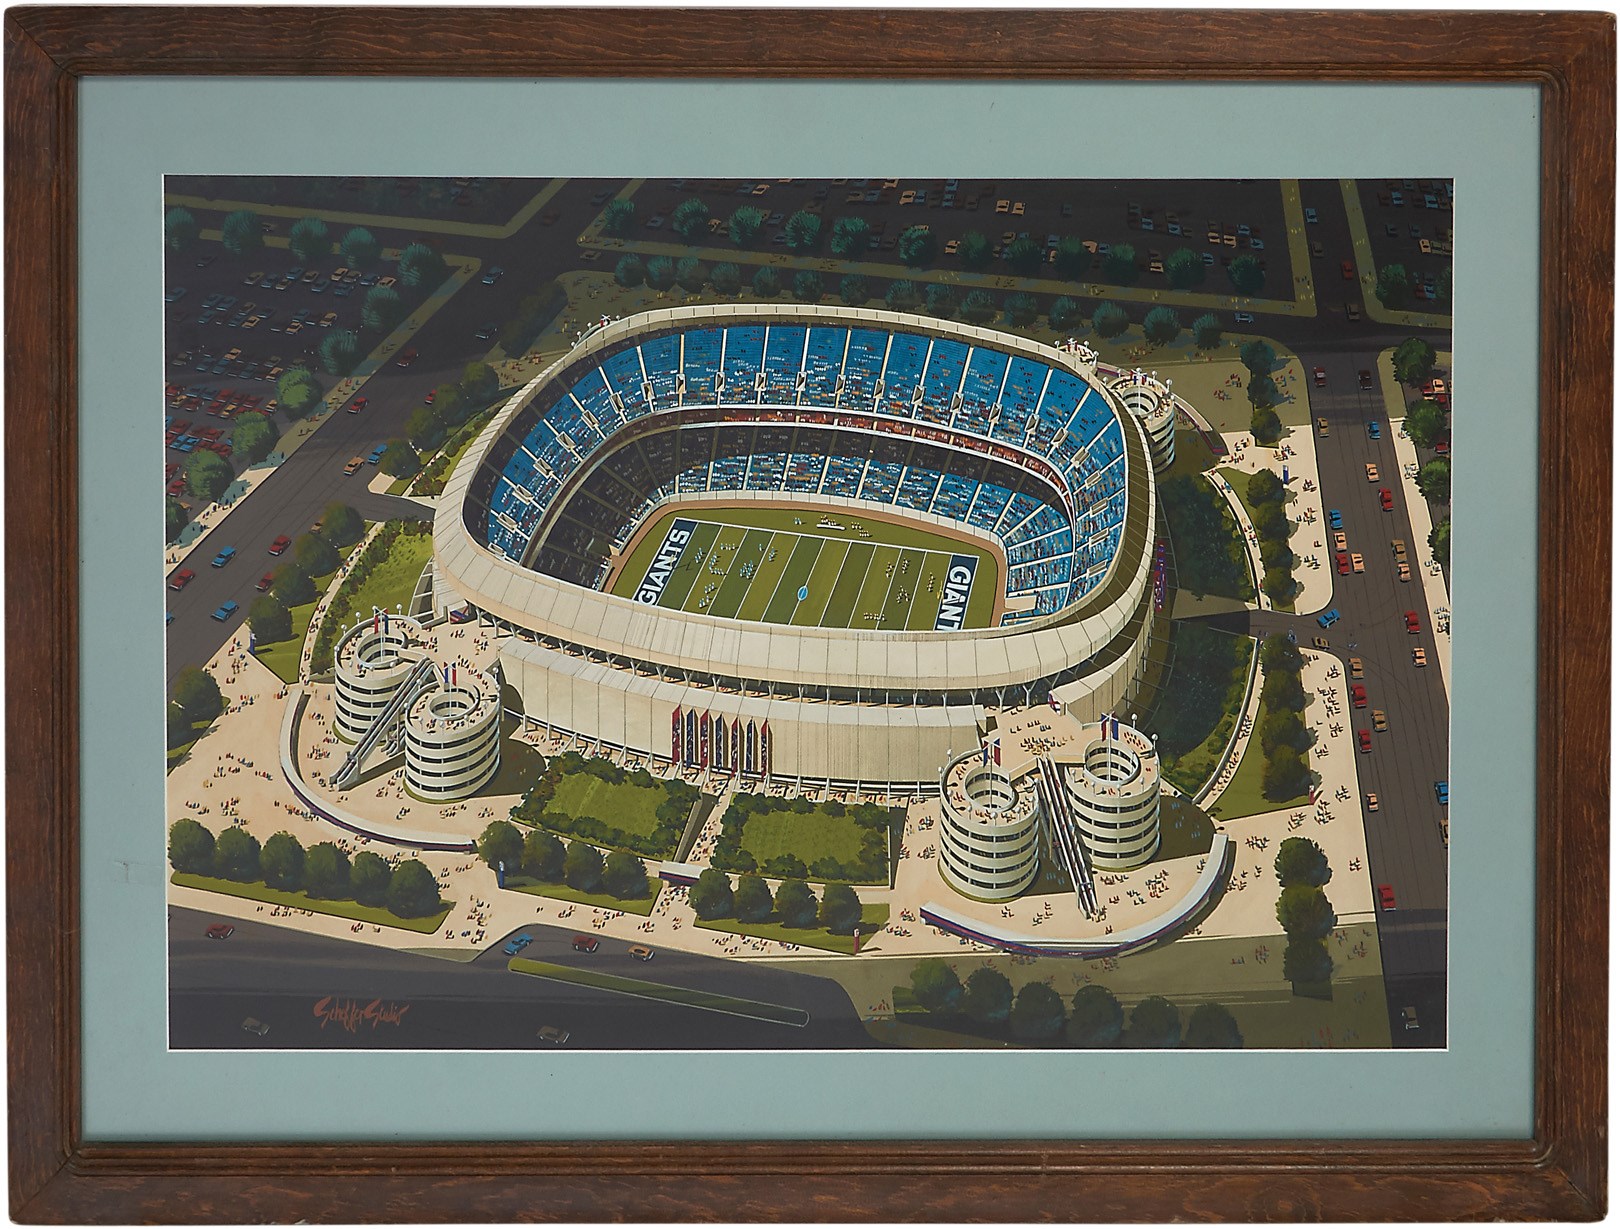 Magnificent 1972-73 Architect's Rendering of Original Giants Stadium